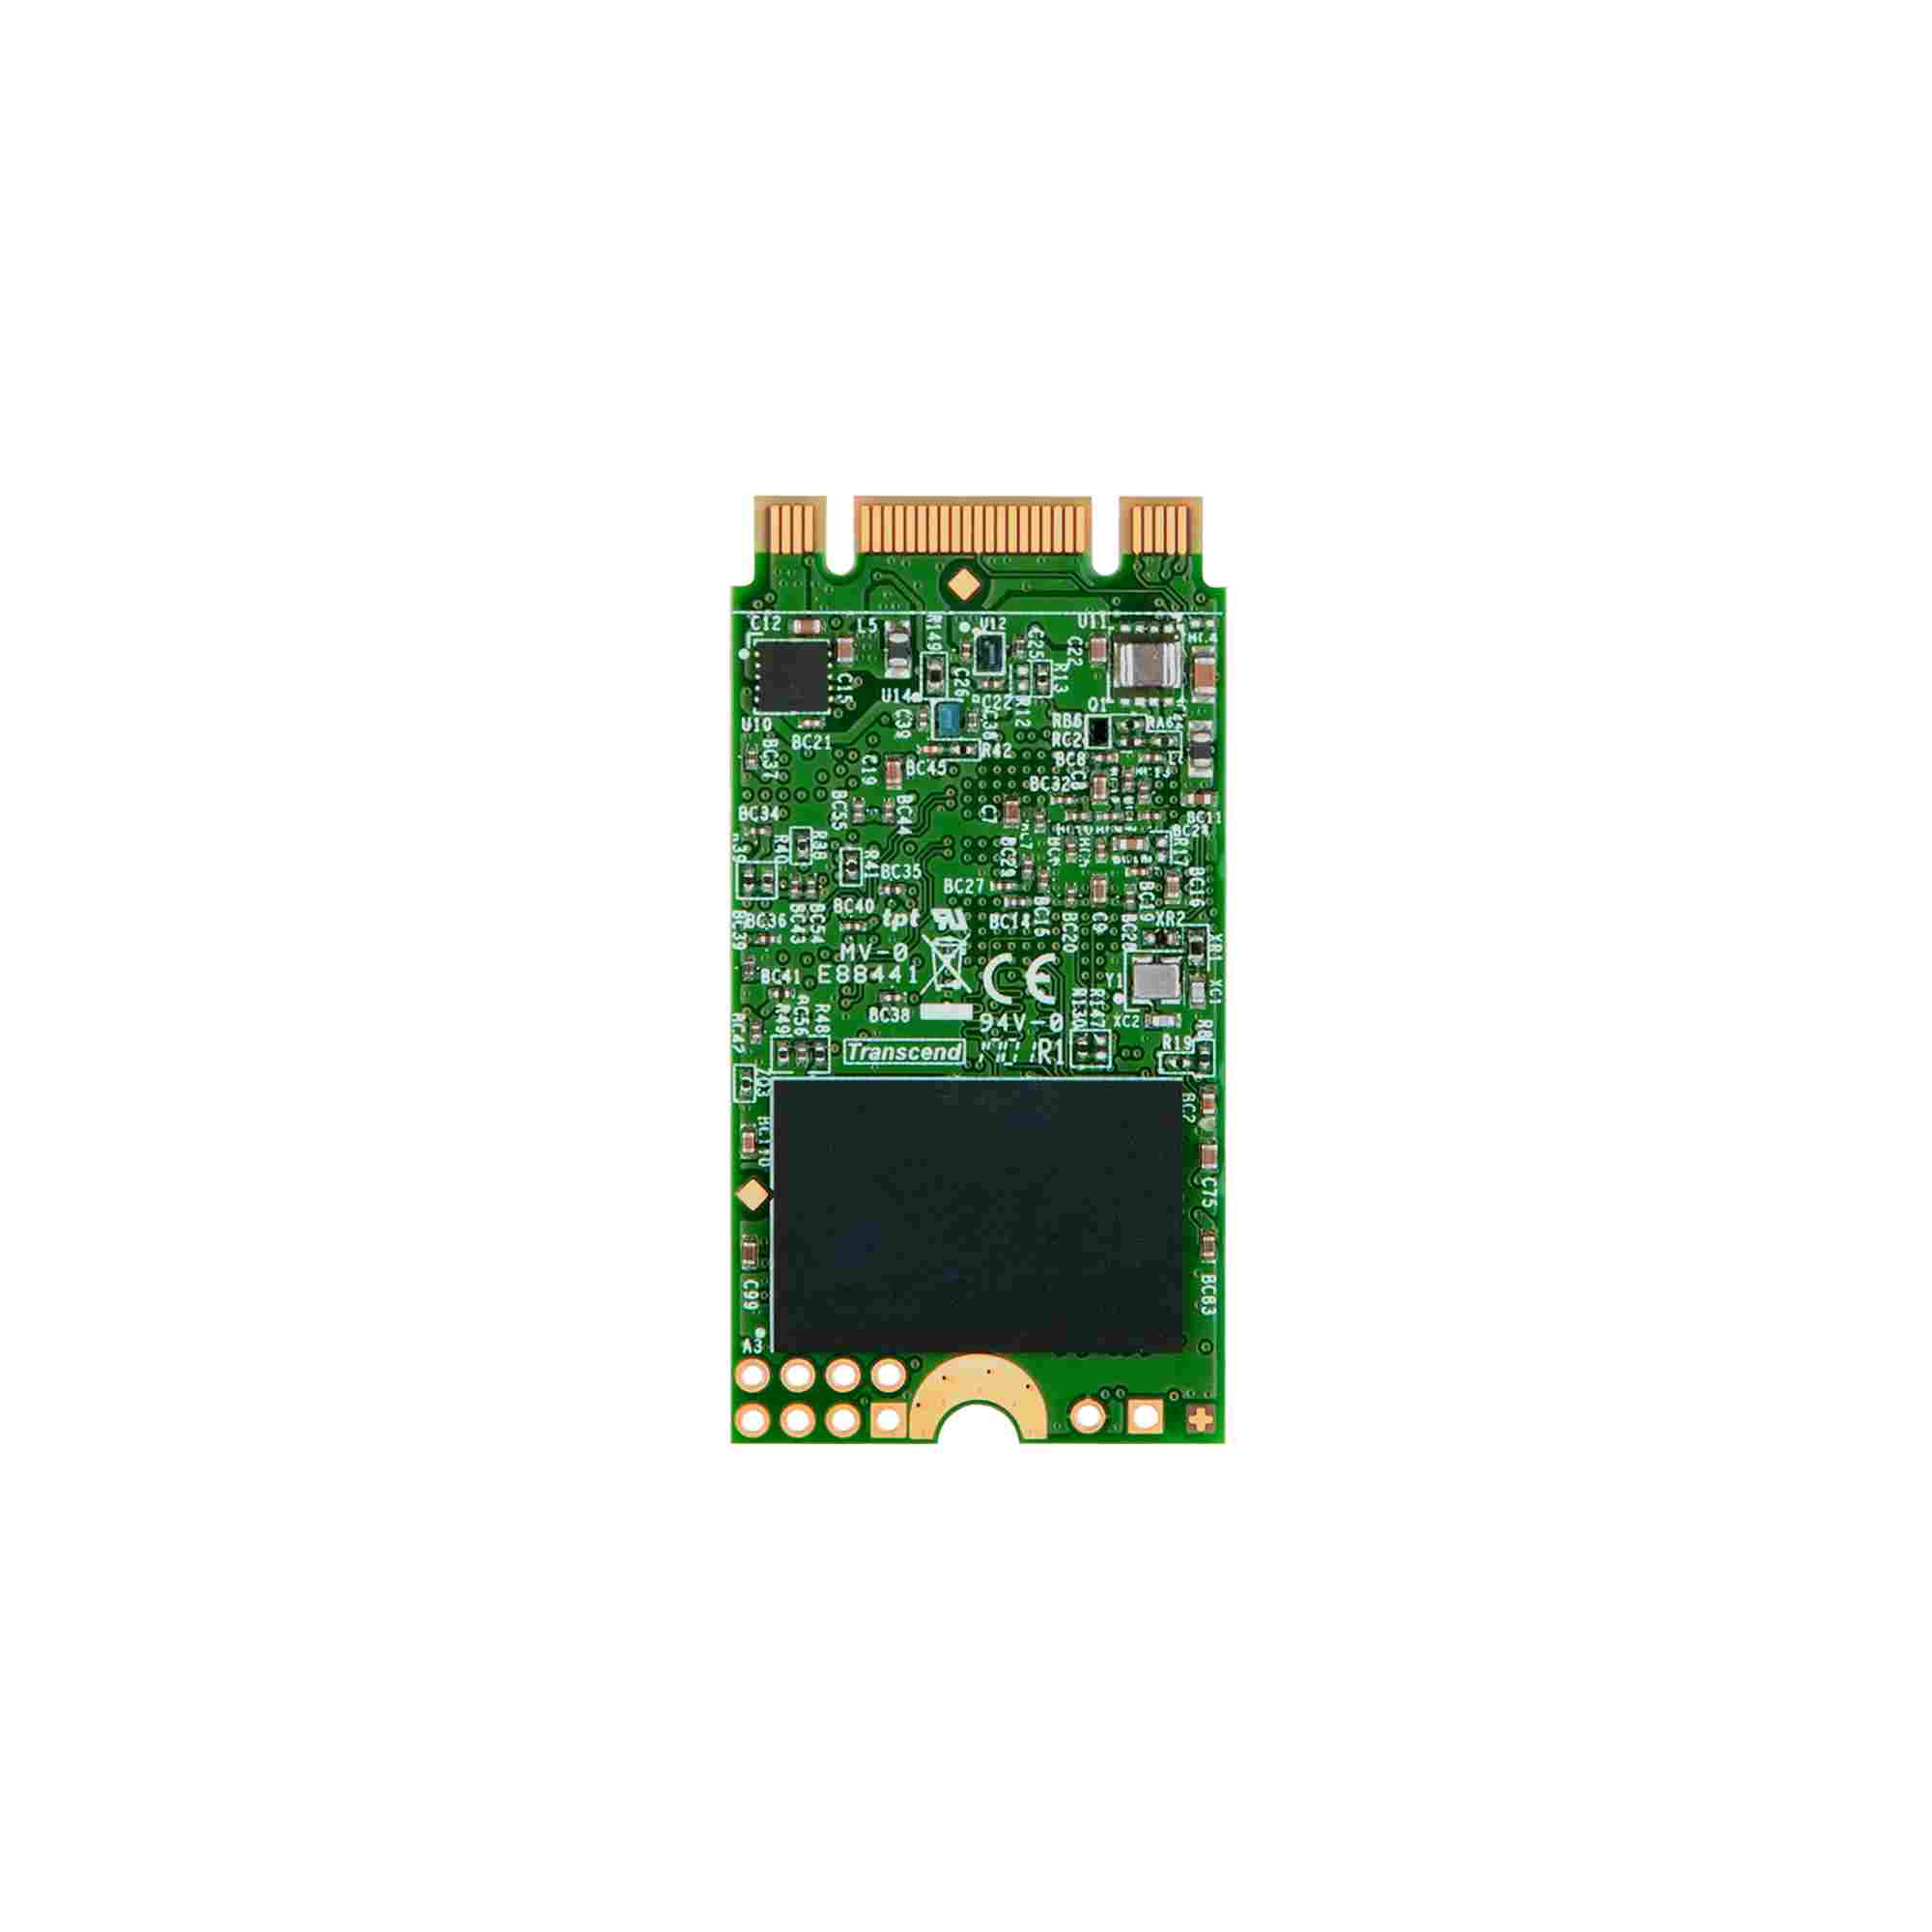 TRANSCEND Industrial SSD MTS420 480GB, M.2 2242, SATA III 6 Gb/s, TLC3 